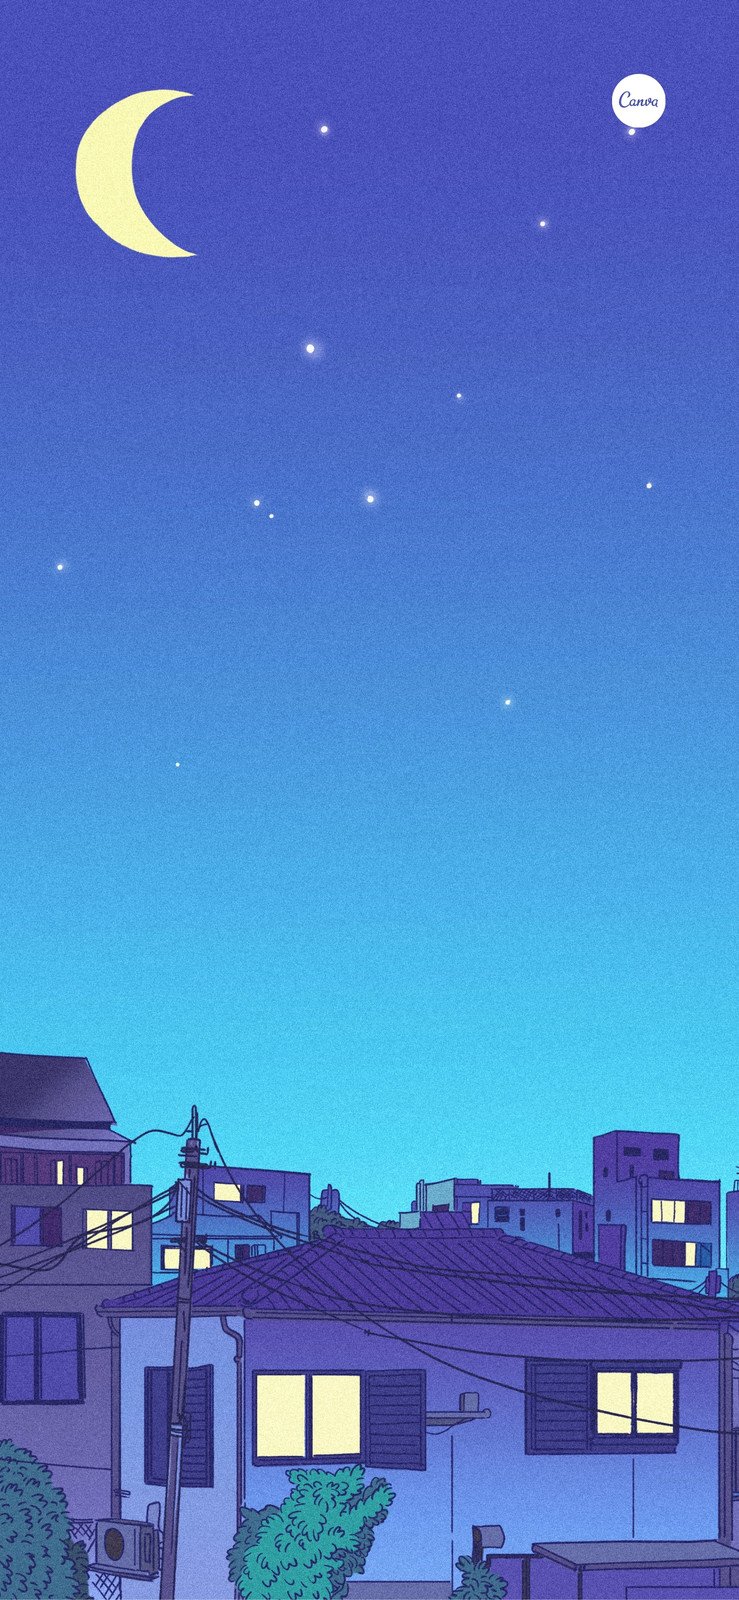 蓝紫色日式插画背景房屋夜景手绘分享新手机壁纸 模板 Canva可画